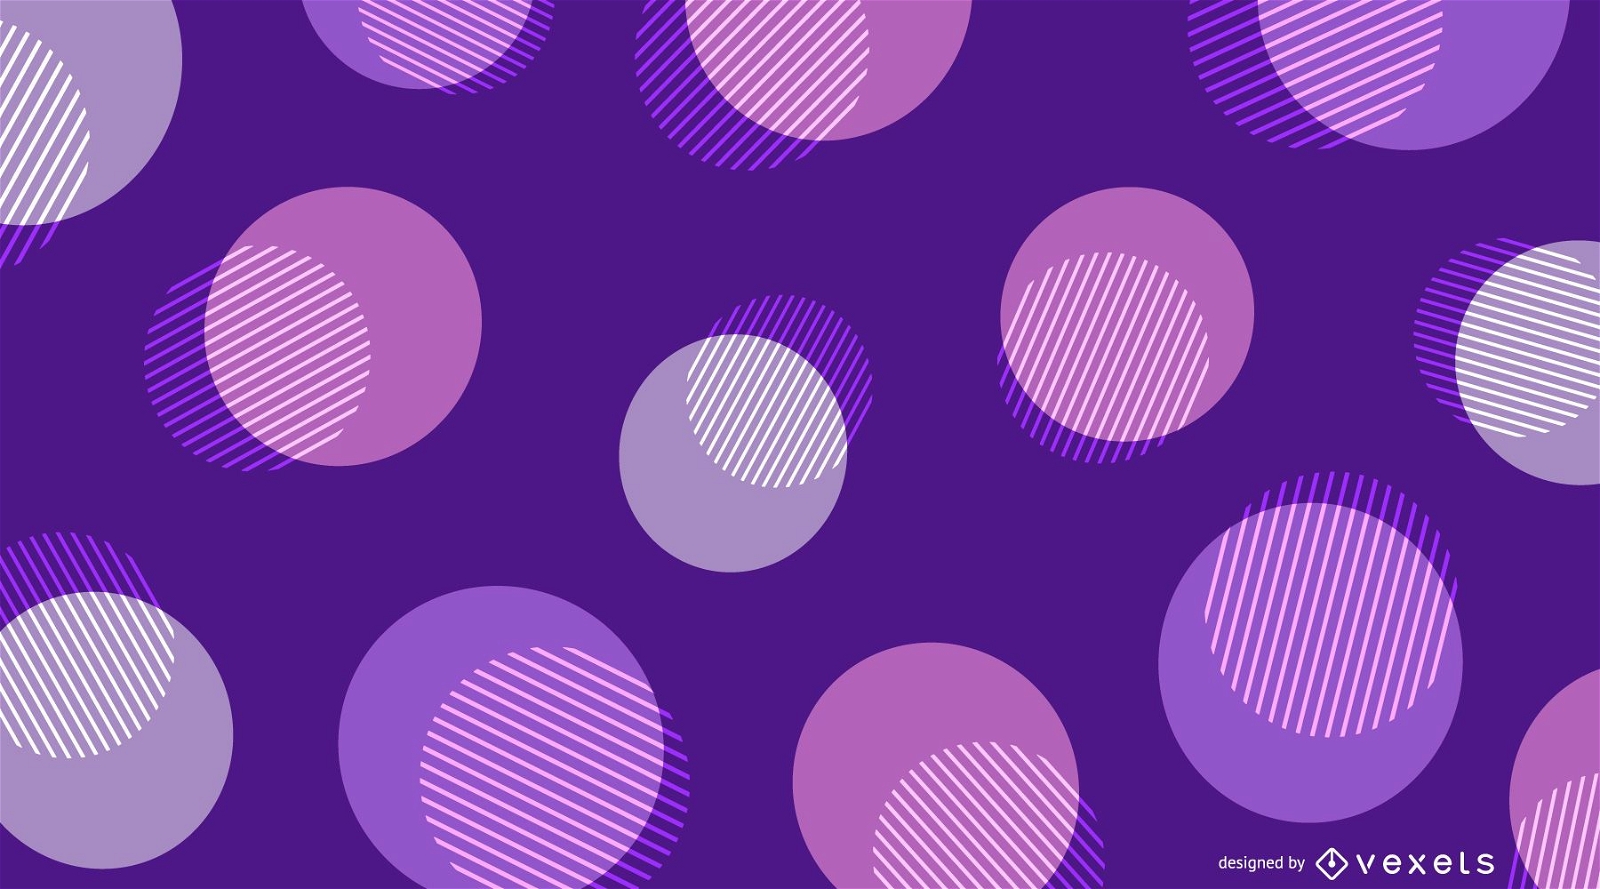 Kreisformen im purpurroten Hintergrunddesign